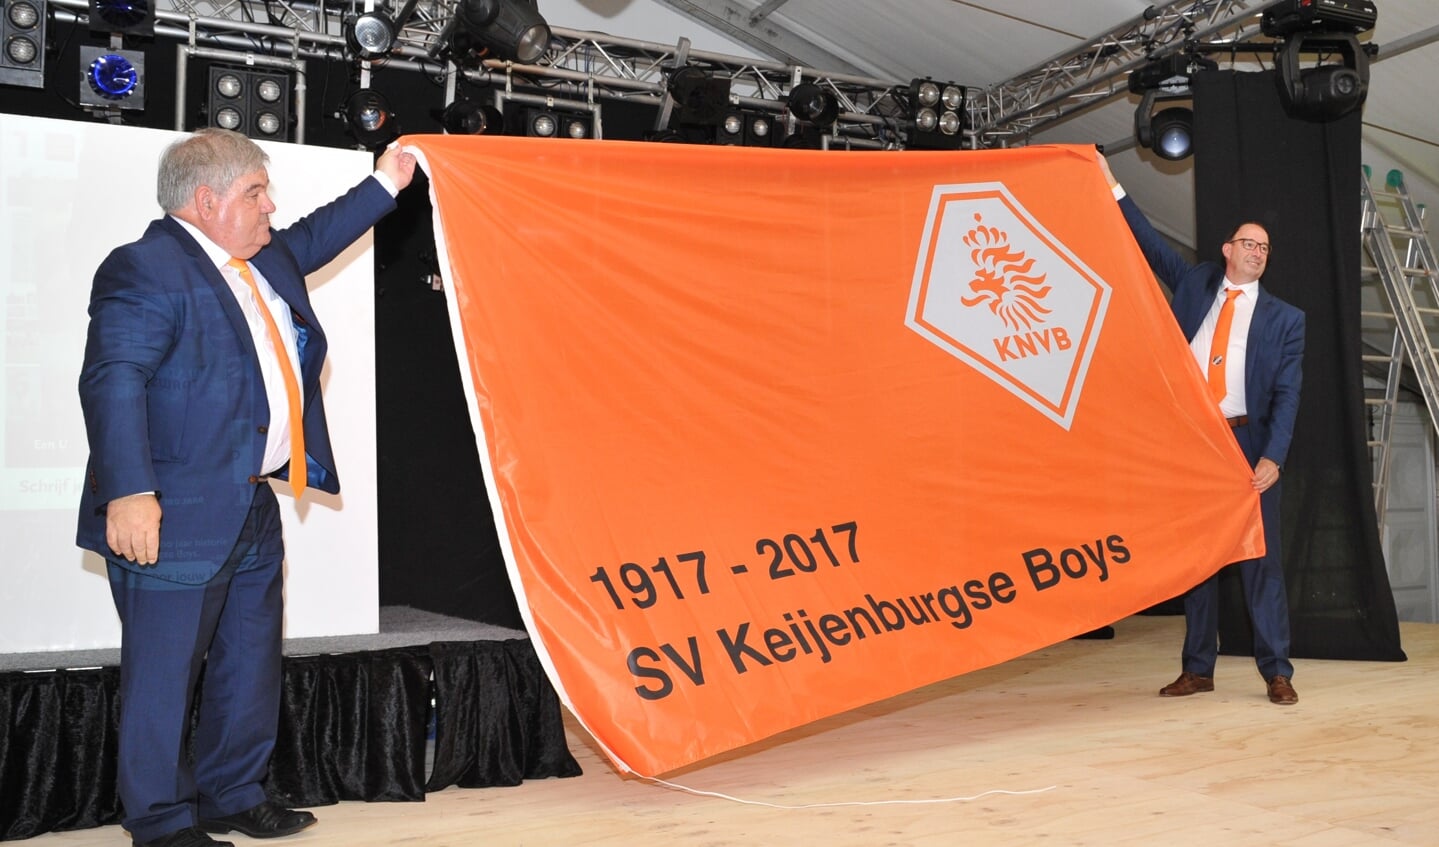 Keijenburgse Boys krijgt uit handen van KNVB-ambassadeur Gerard van Balveren een enorme oranje vlag met daarop het logo van de Nederlandse voetbalbond en de tekst ‘Keijenburgse Boys 1917-2017’. Foto: Achterhoekfoto.nl/John Mokkink